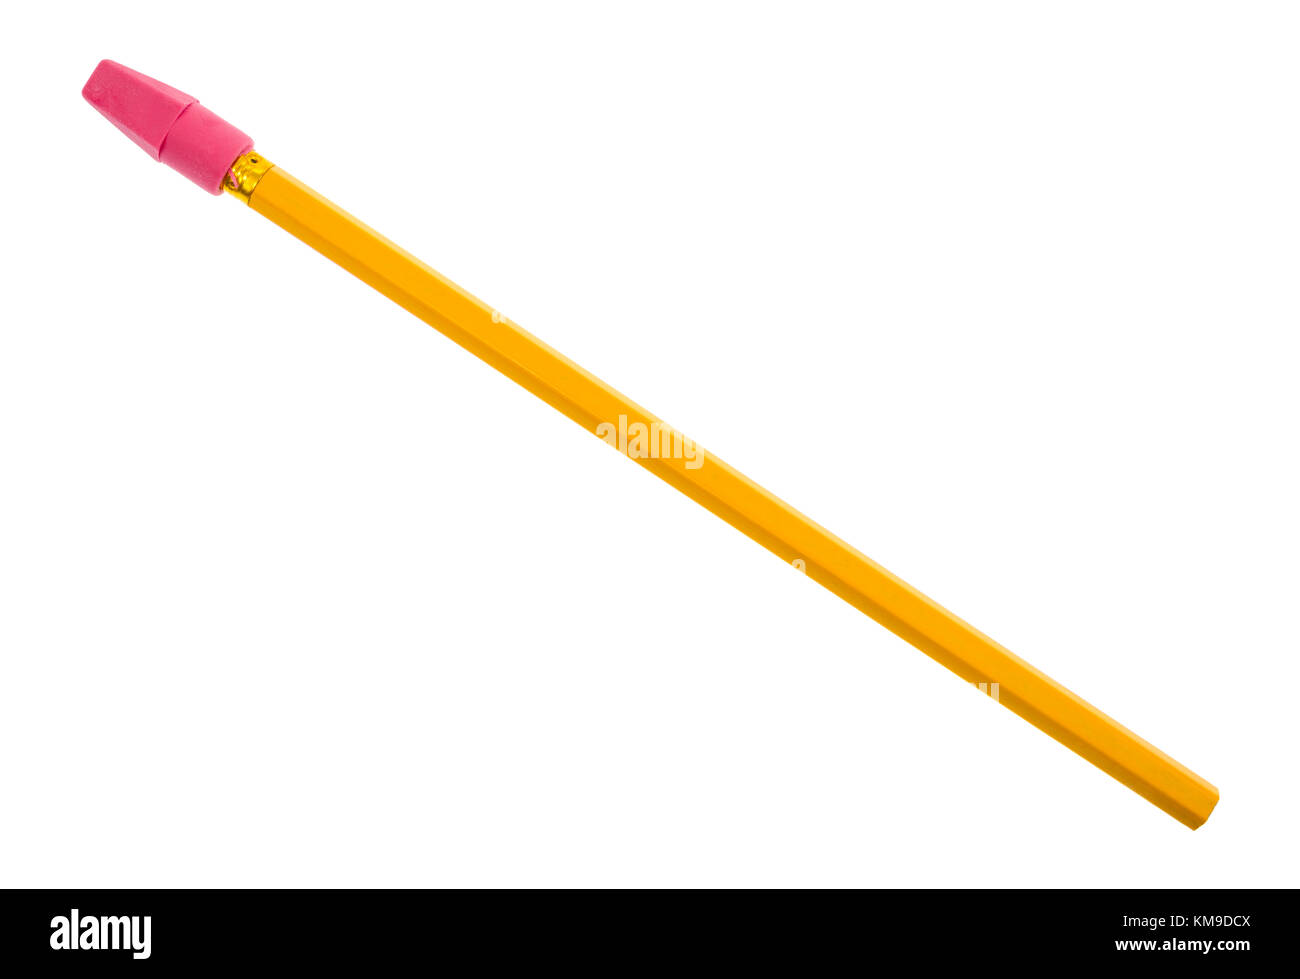 Blick von oben auf eine einzelne gelbe Bleistift mit einem roten synthetischer Kautschuk Radierer Gap auf einem weißen Hintergrund. Stockfoto